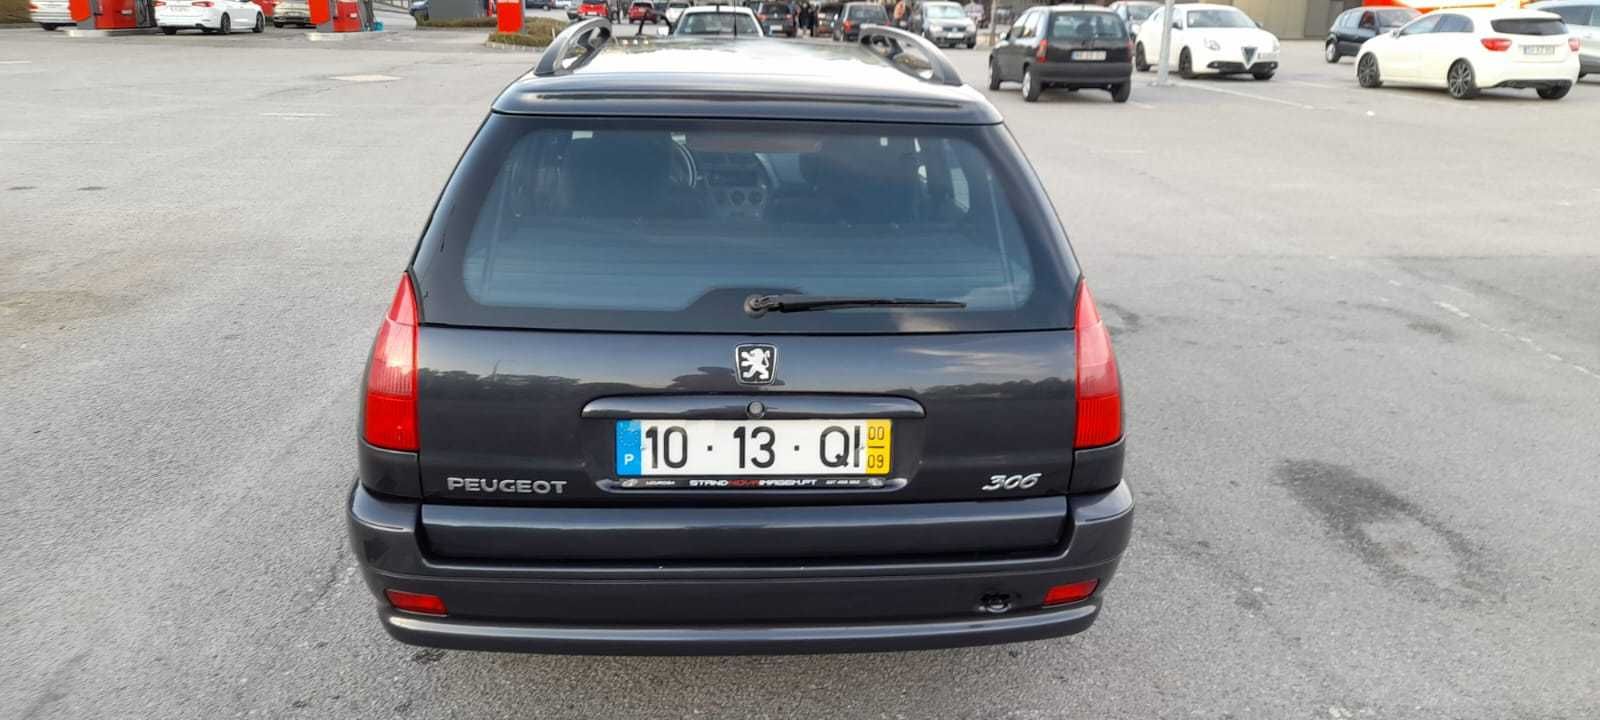 Peugeot 306 Break 1.4 ano 2000